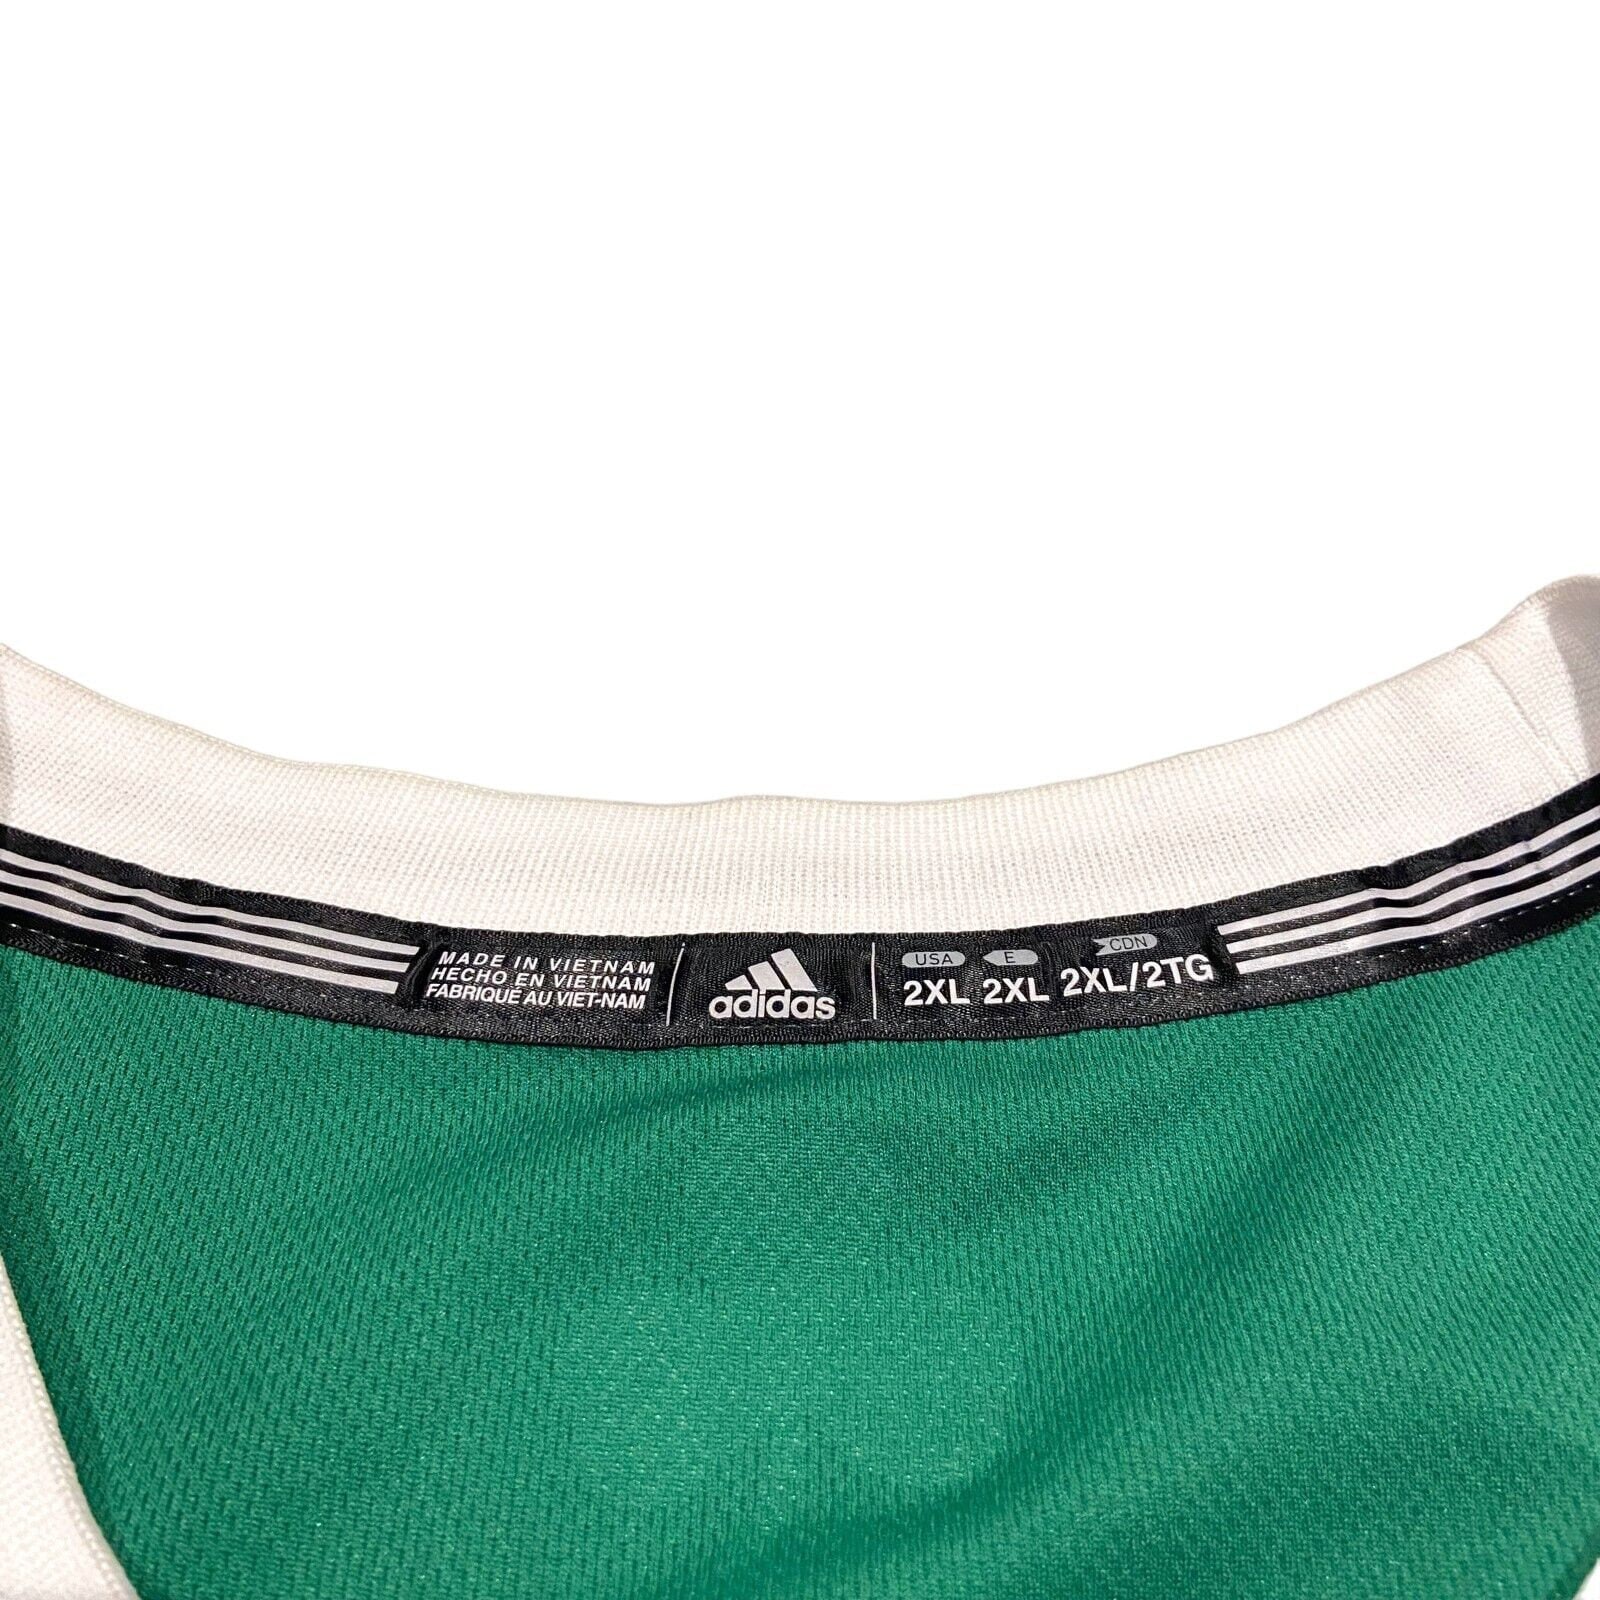 Vintage Mens NBA Adidas Boston Celtics Rajon Rondo Jersey Size 2xl Sewn on  Green